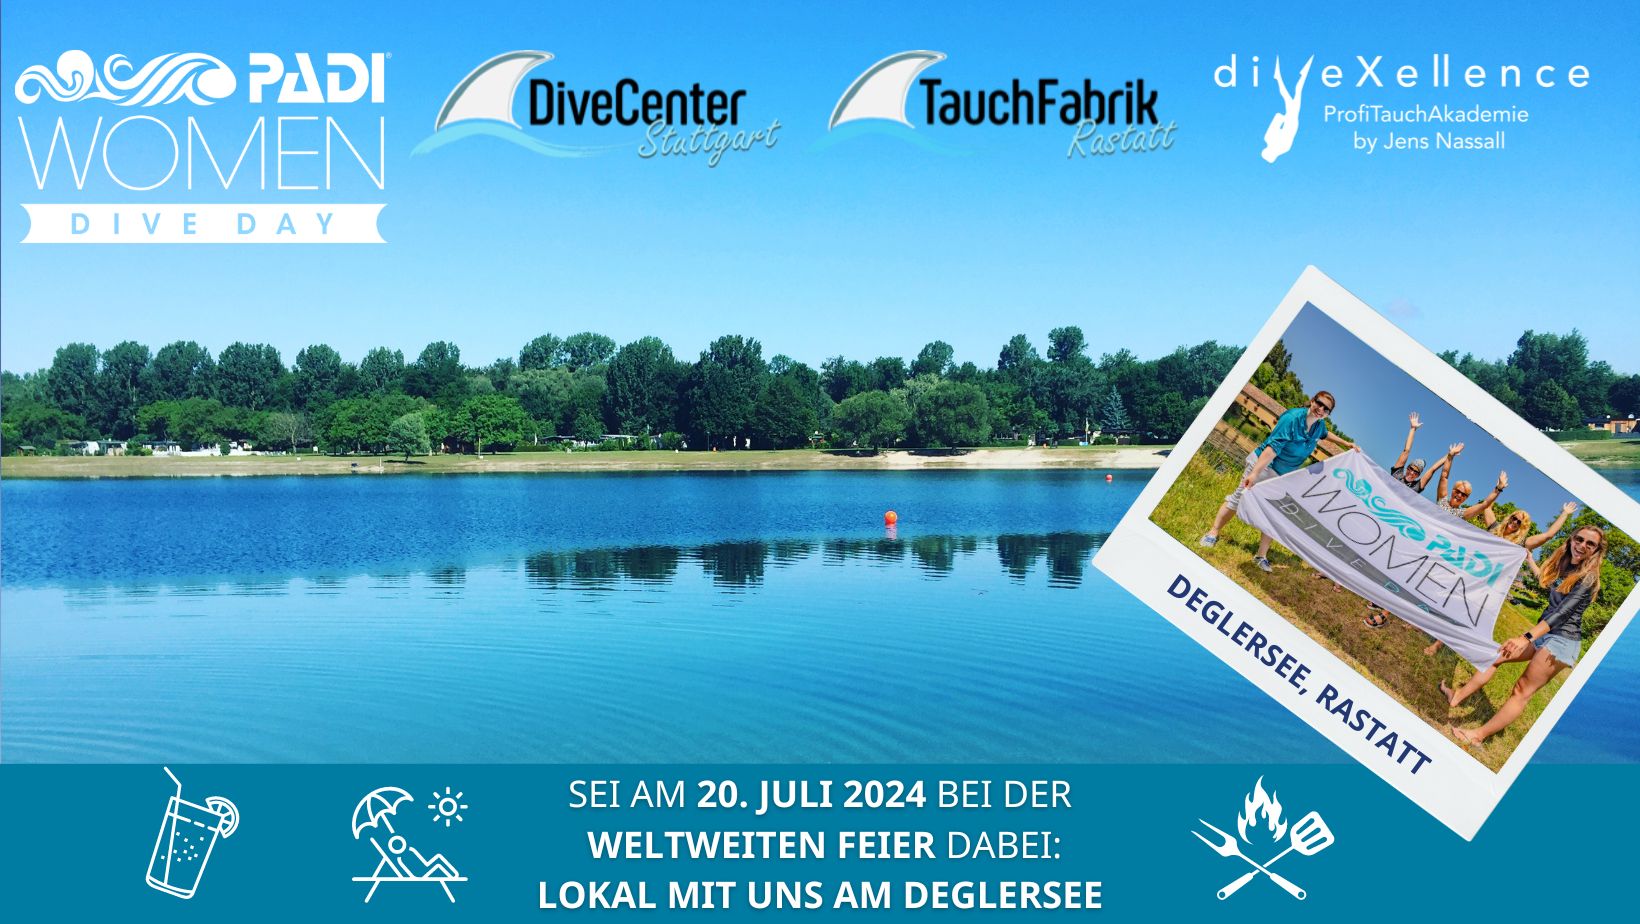 Women Dive Day diveXellence Tauchschule Ulm Deglersee Rastatt Tauchfabrik DiveCenter Stuttgart